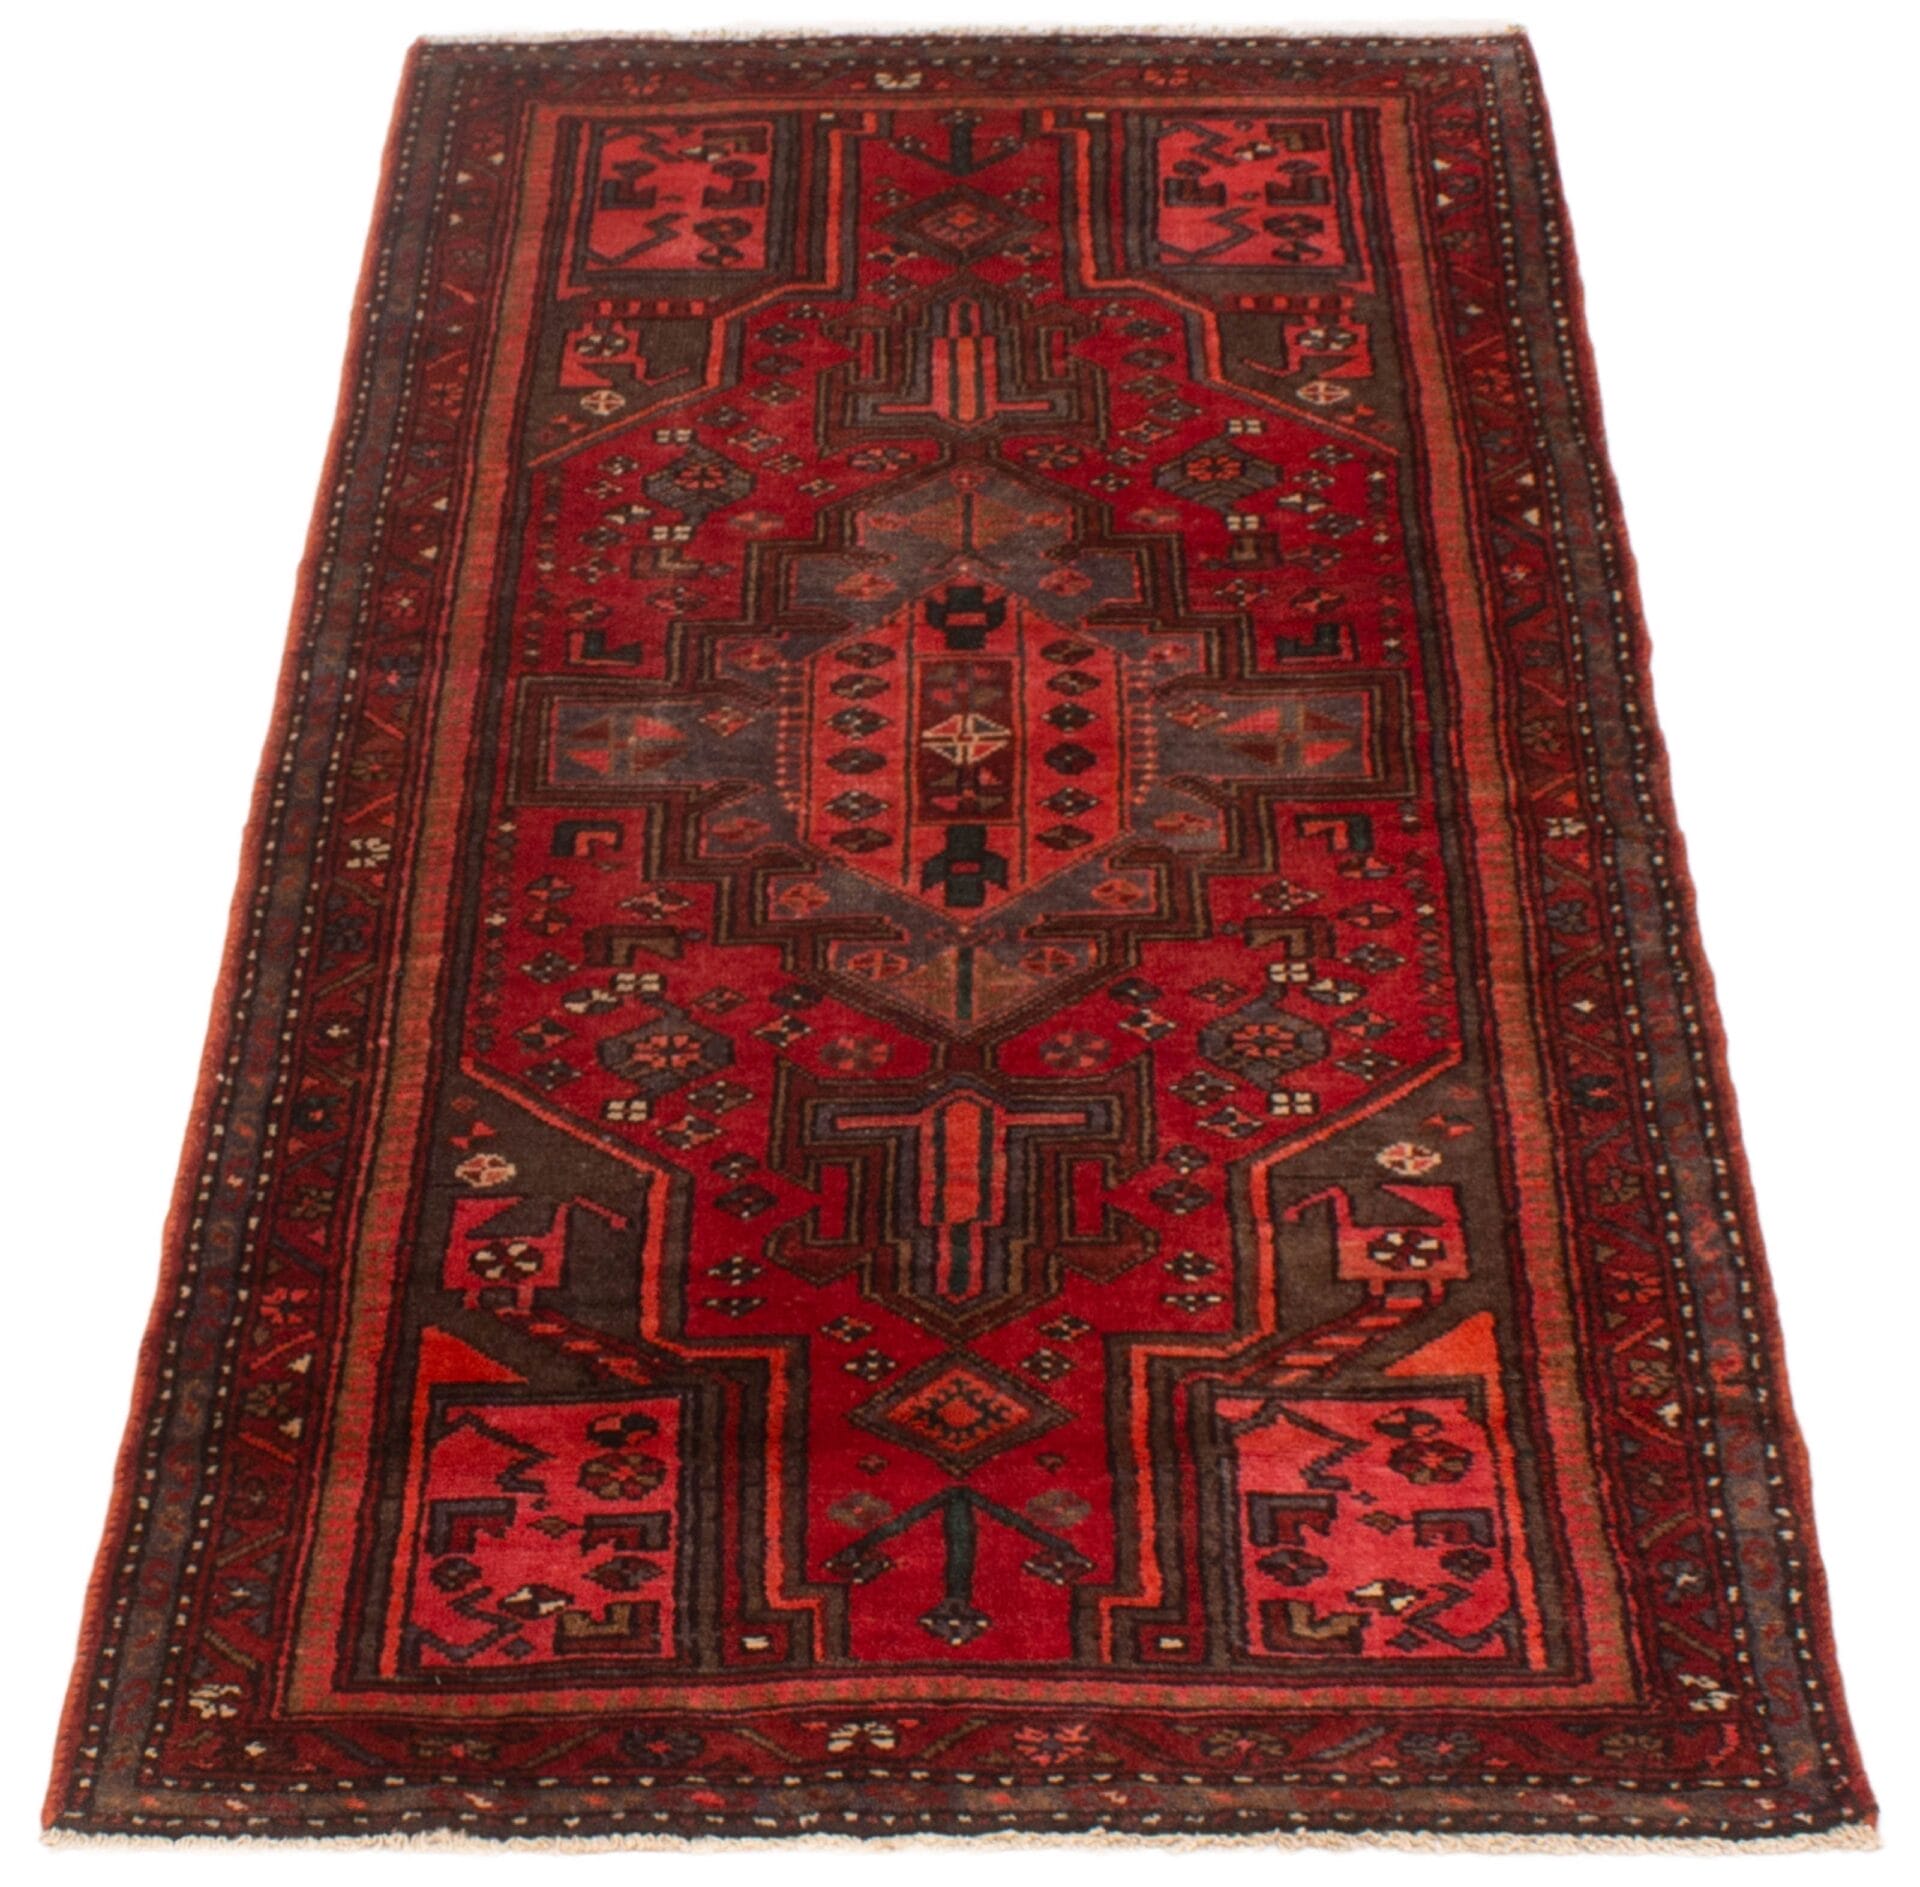 Beschrijving: Een rood tapijt met een ingewikkeld ontwerp.